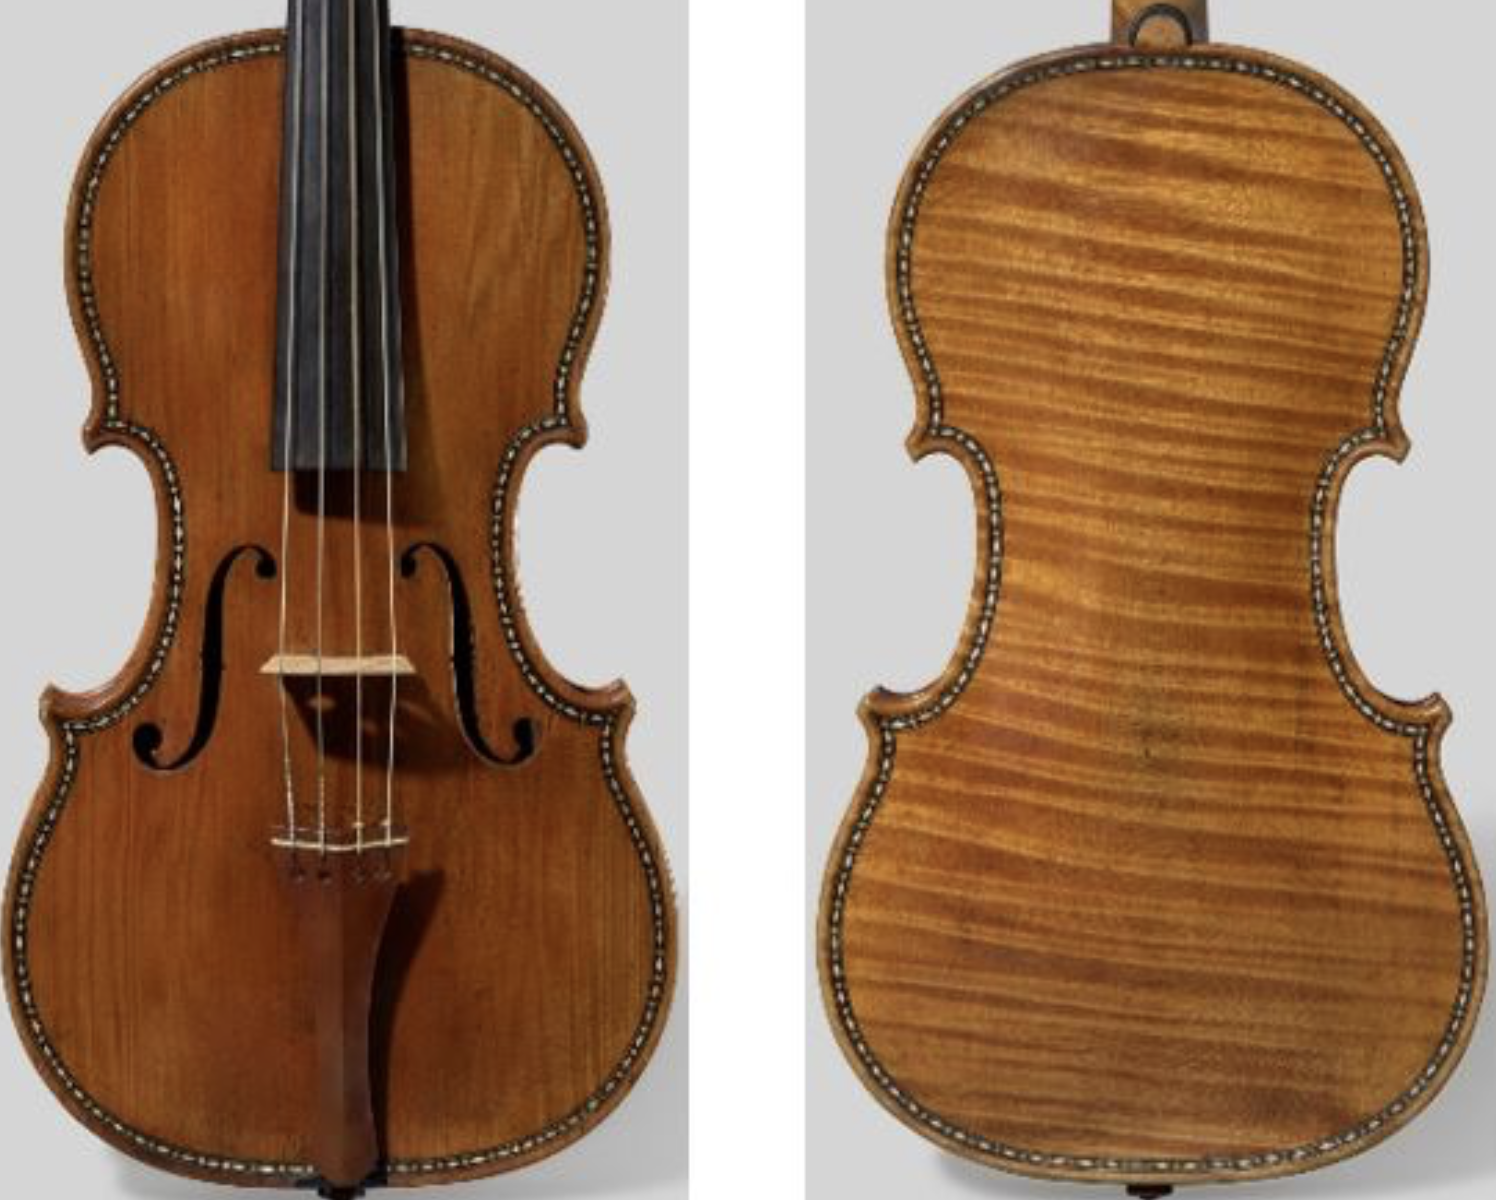 Lo Stradivari “Hellier” all’asta da Christie’s. Stima fino a 9 milioni £